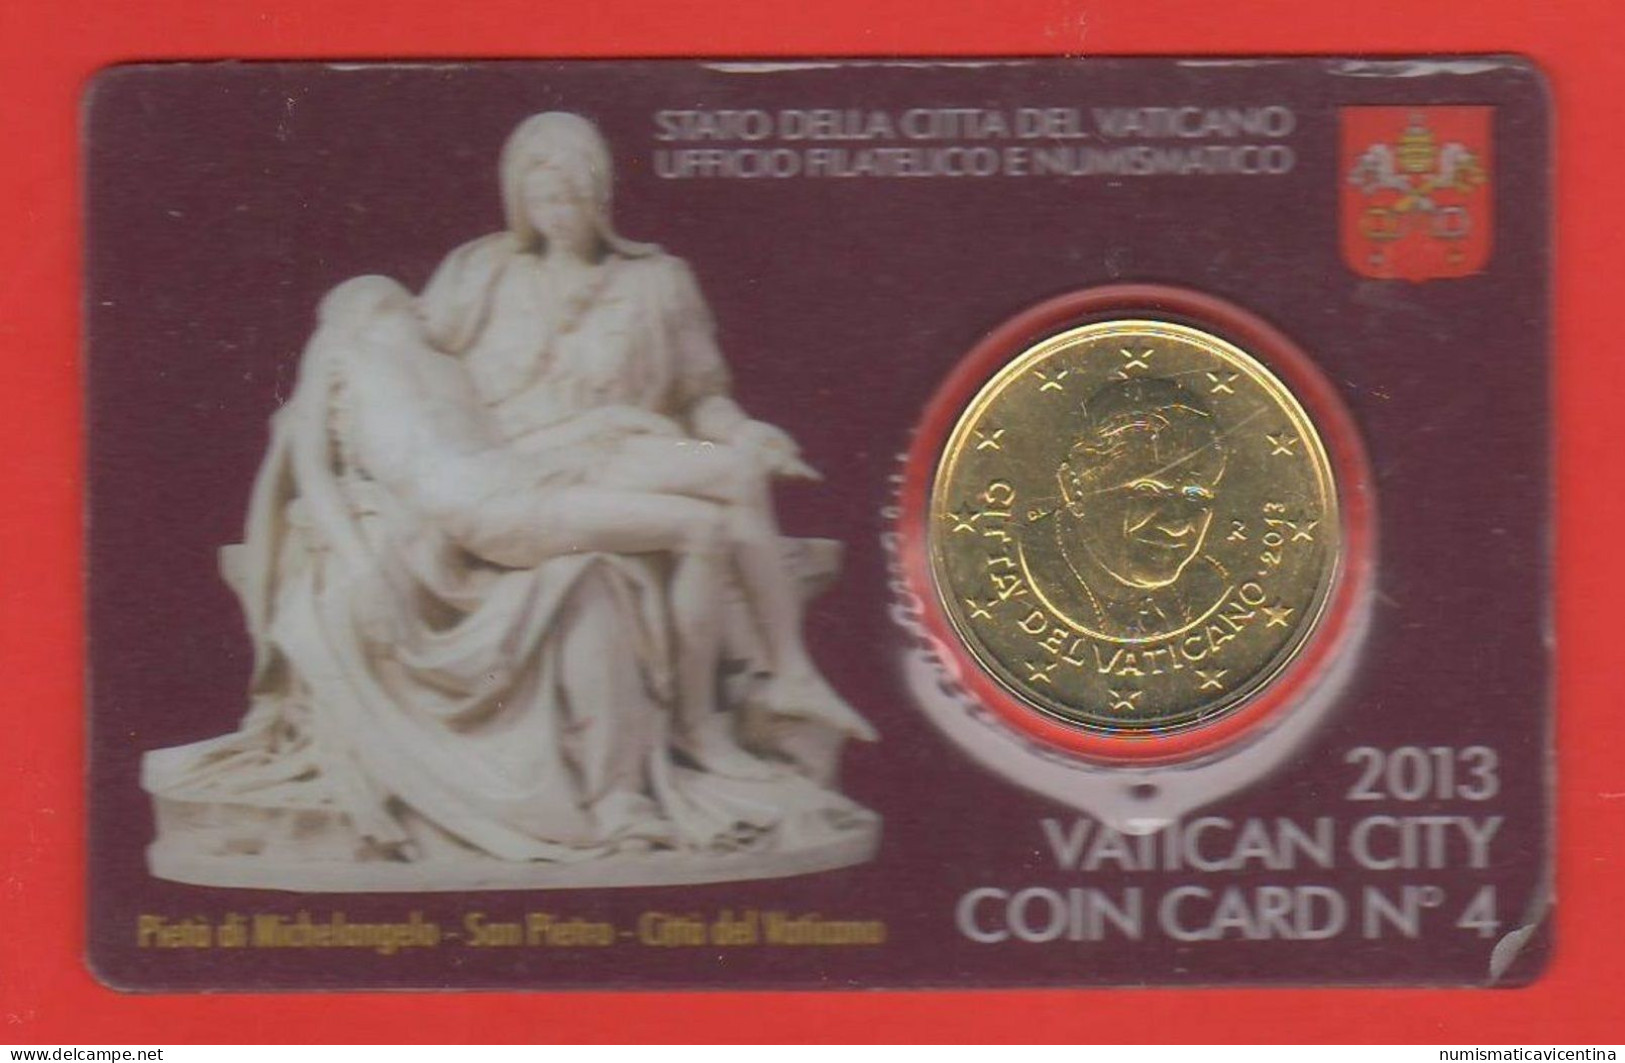 Vaticano 50 Centesimi 2013 Benedetto XVI° Coin Card N ° 4 Mint Roma 0,50 € Vatican City - Vaticano